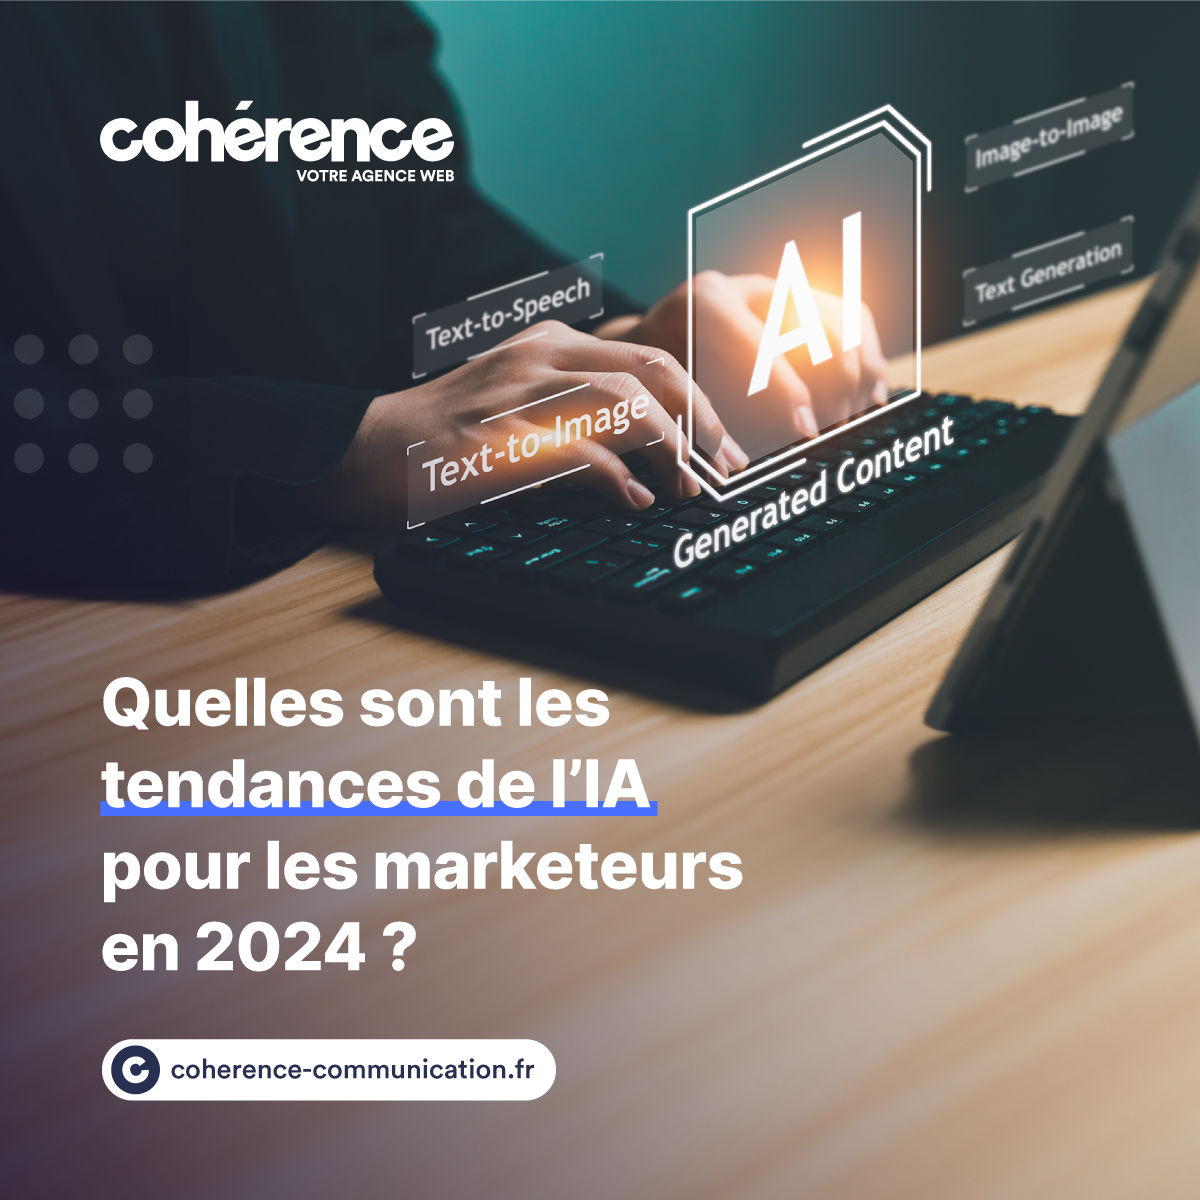 Coherence Agence Web A Rennes Tendances De L IA En 2024